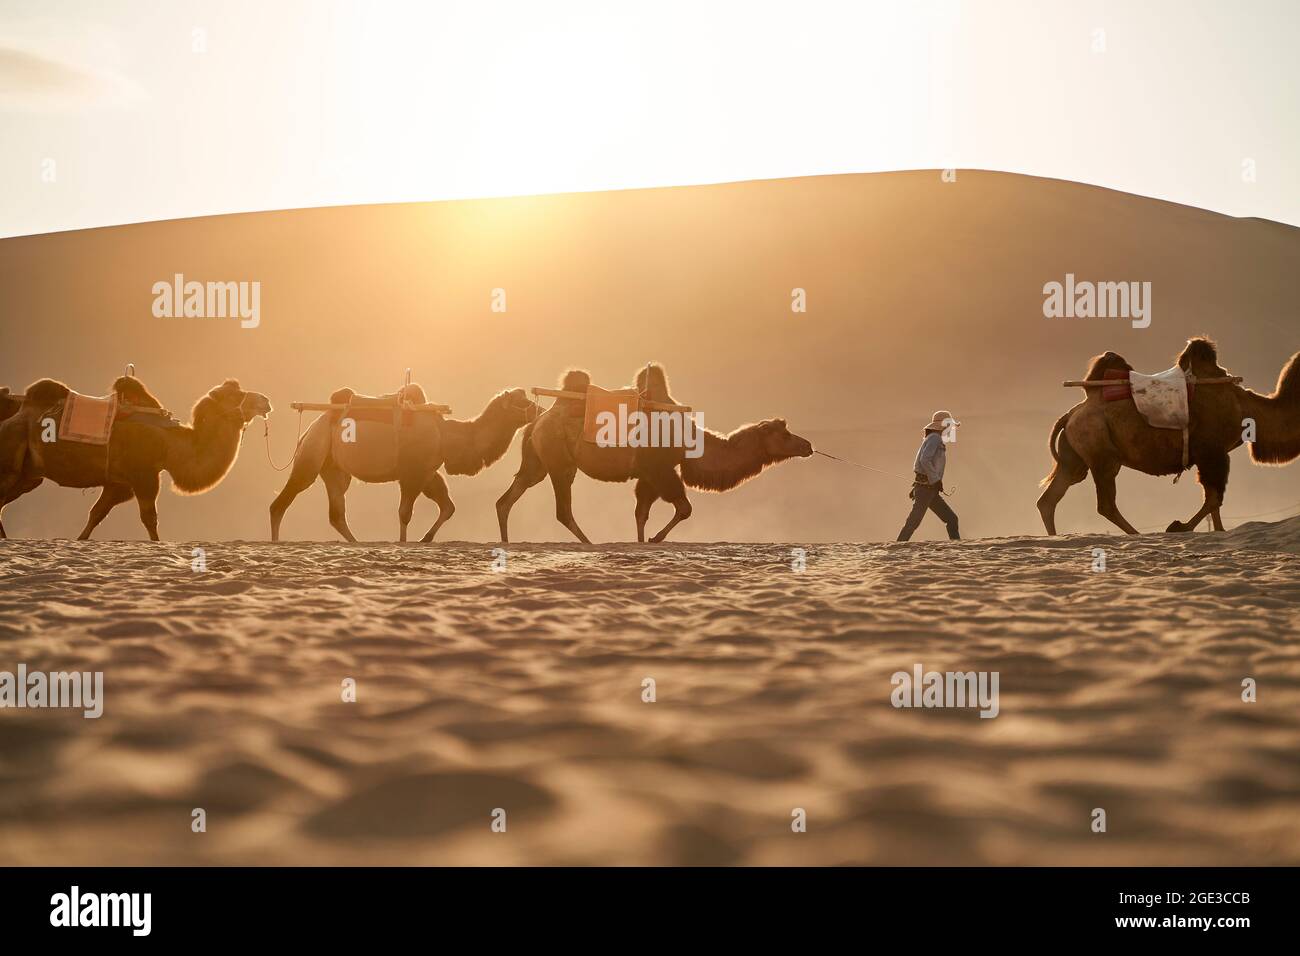 caravana de camellos caminando en el desierto al atardecer con una enorme duna de arena en el fondo Foto de stock